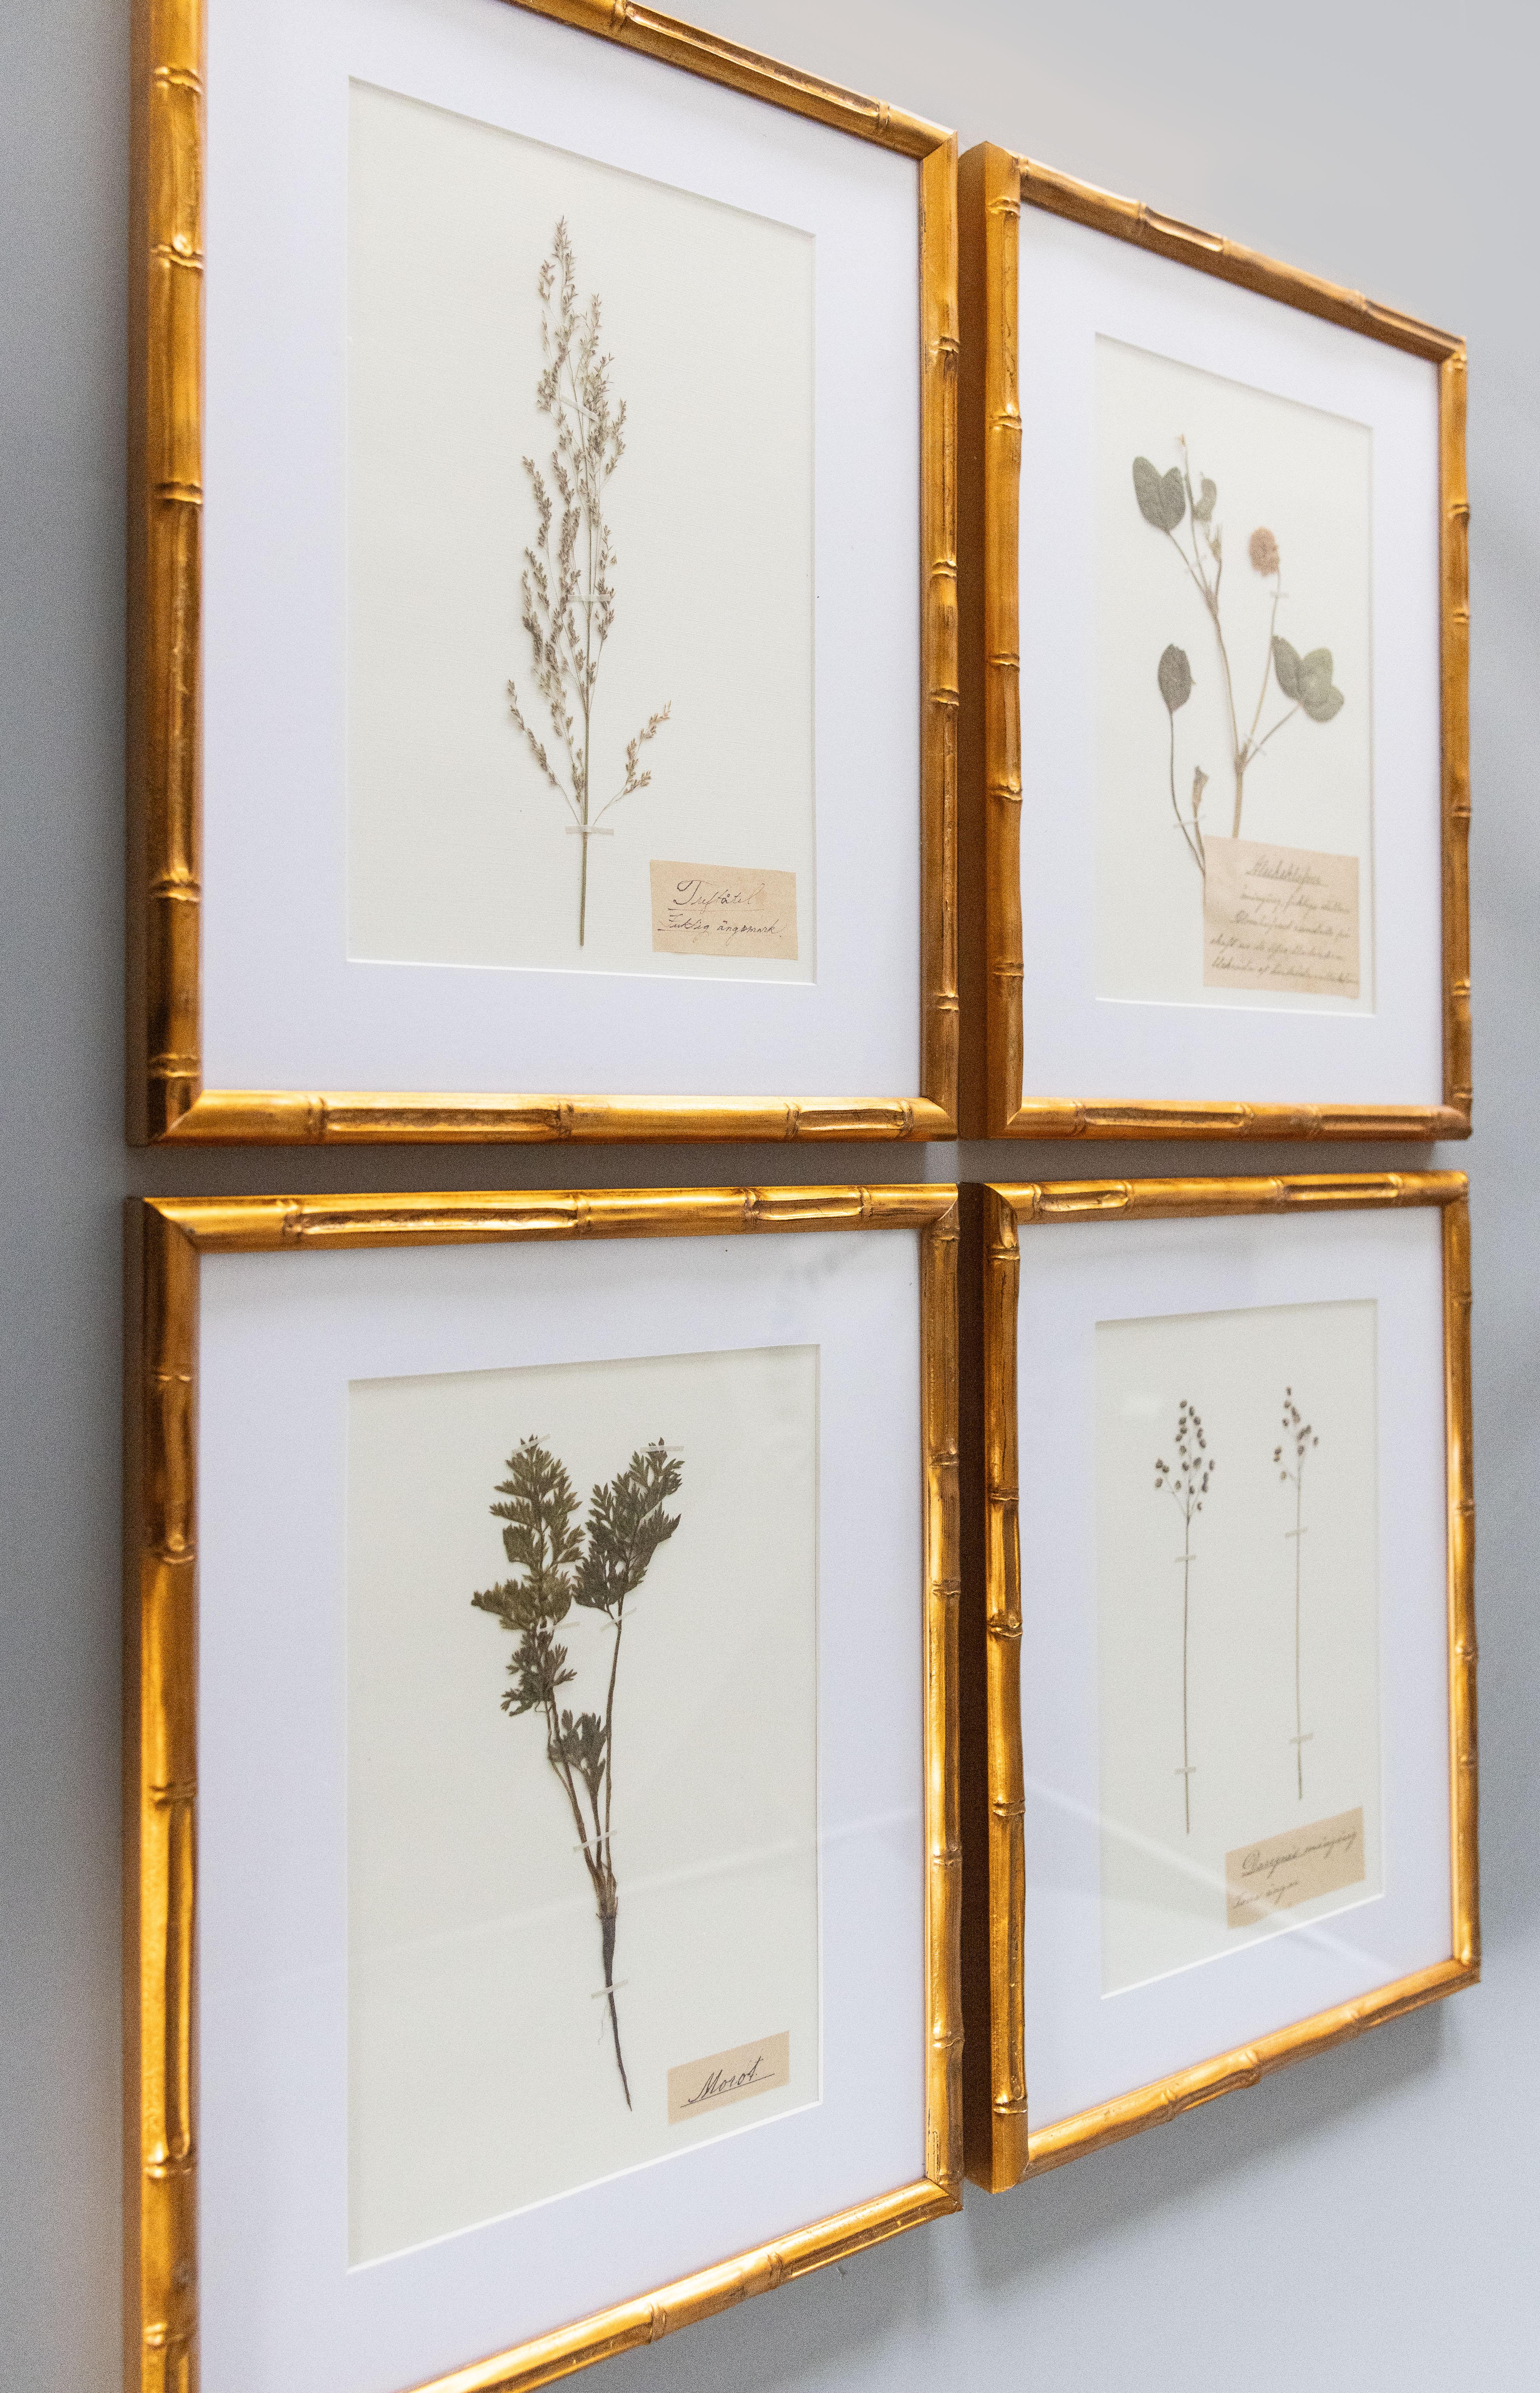 Schöne gerahmte antike Herbarium Blumenproben, um 1890 gesammelt. Handgeschriebene Namen in schöner schwedischer Schrift. Zu den Exemplaren gehören wilde Möhren, mehrjährige Zahnbürstenpflanzen, Weißklee und Espengras, die in Goldrahmen aus